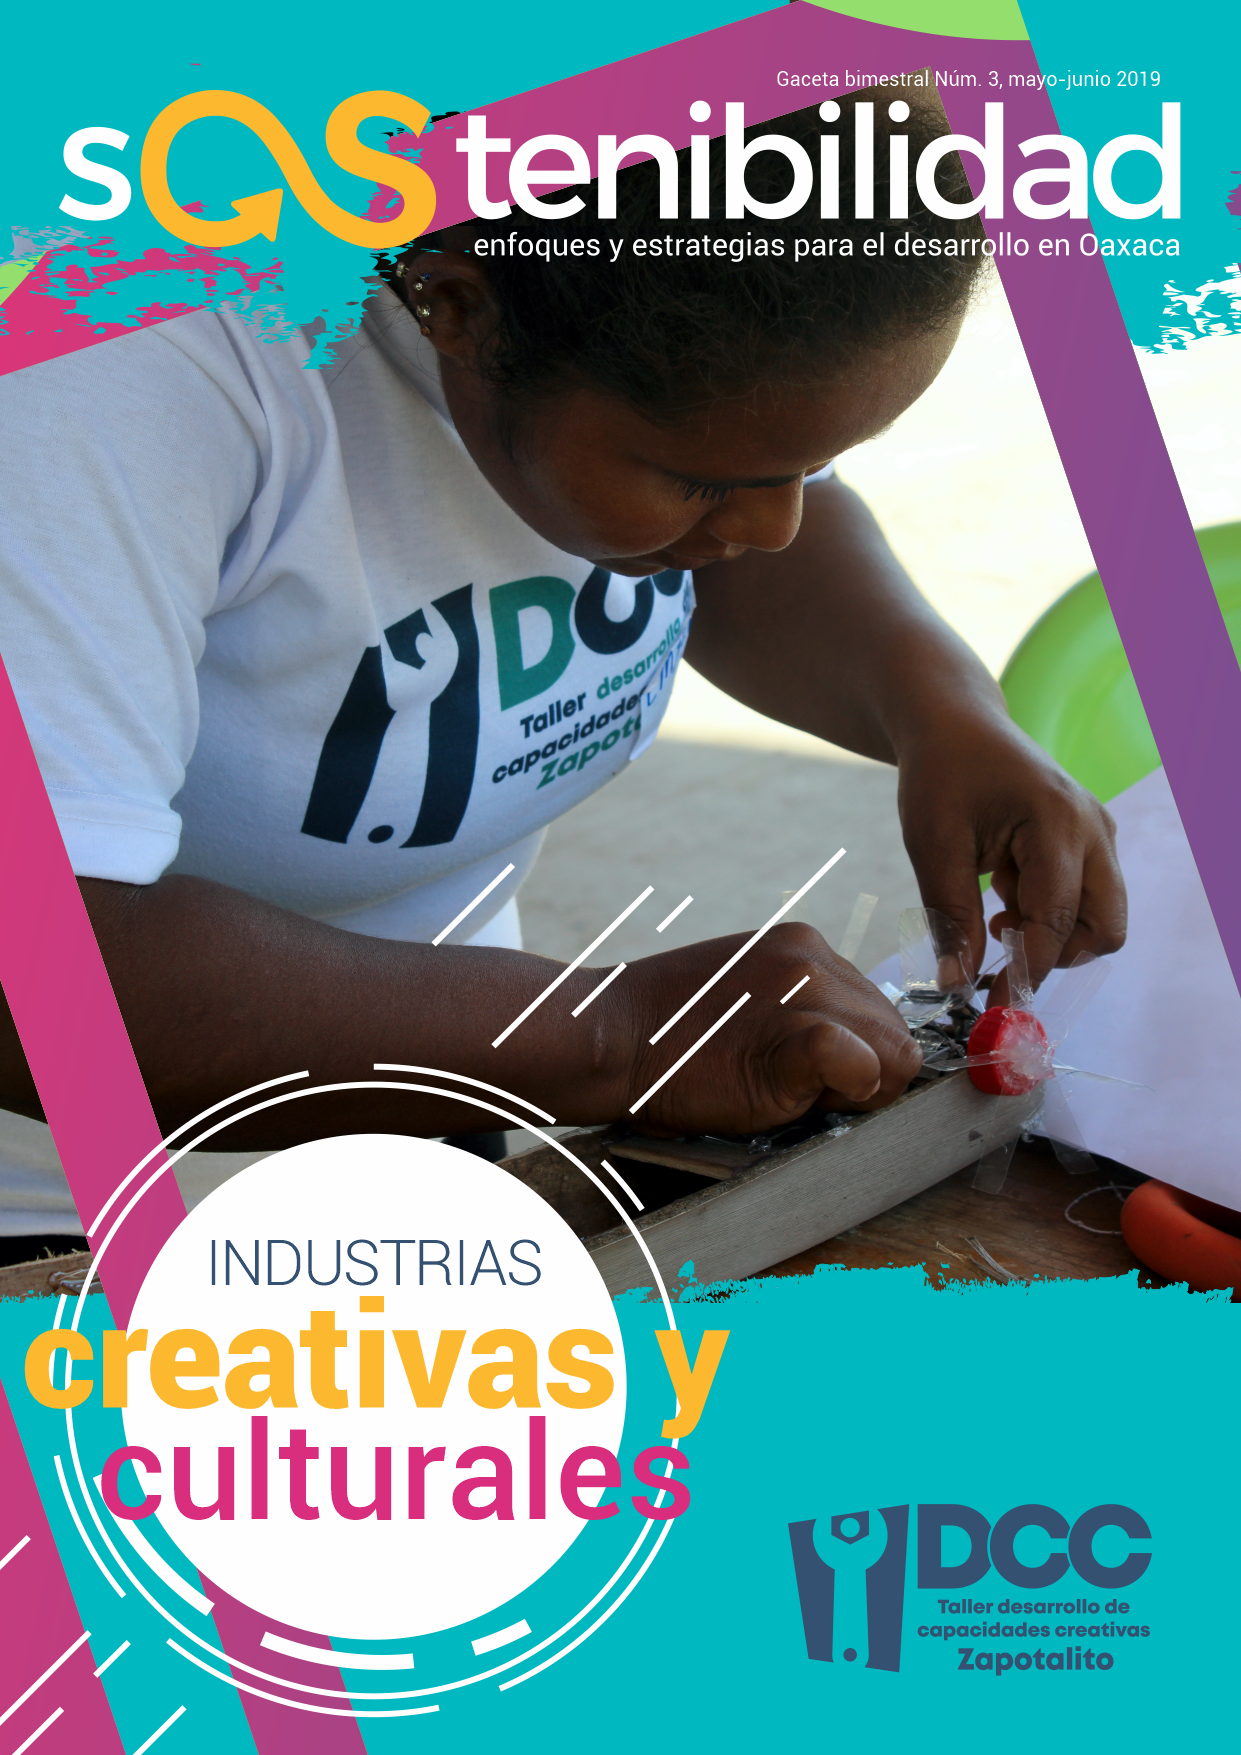 Industrias creativas y culturales